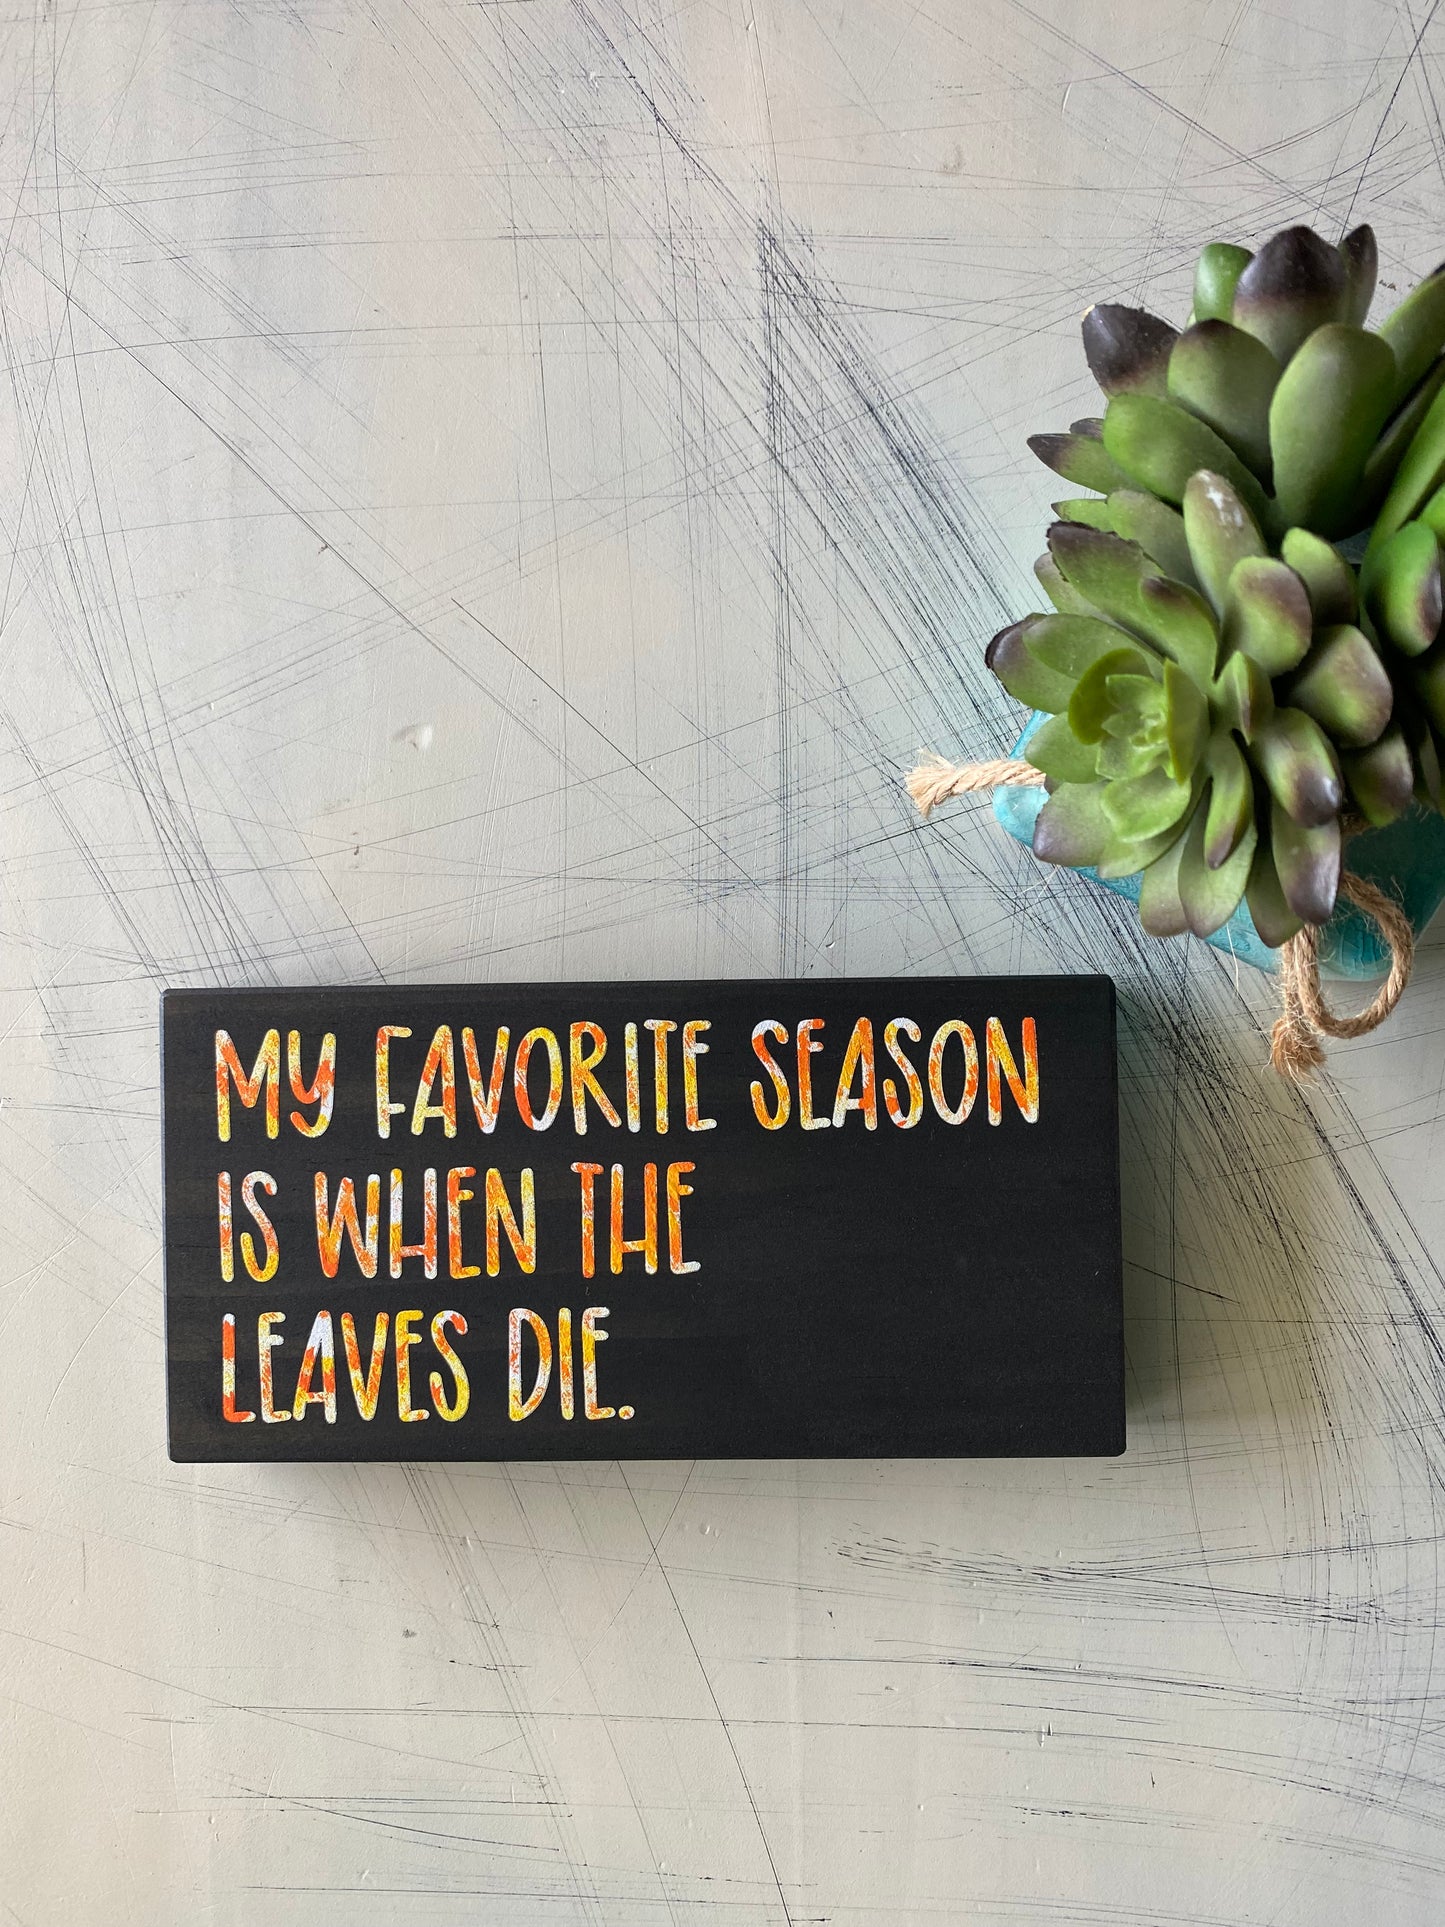 My favorite season is when the leaves die